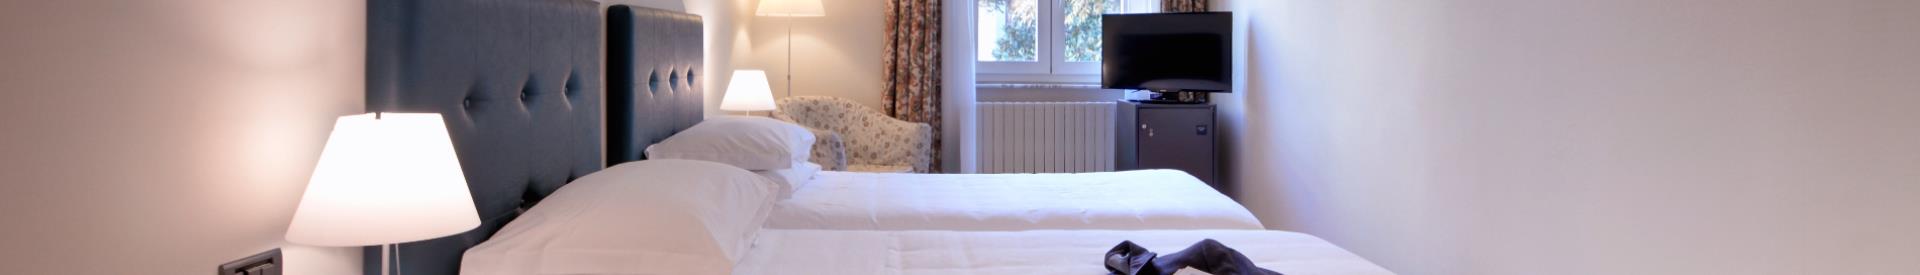 Il Best Western Hotel Crimea, 3 stelle in centro a Torino, offre servizi speciali dedicati a chi viaggia per lavoro. Tante attenzioni pensate per farti ritrovare anche in viaggio le stesse comodità del tuo ufficio.